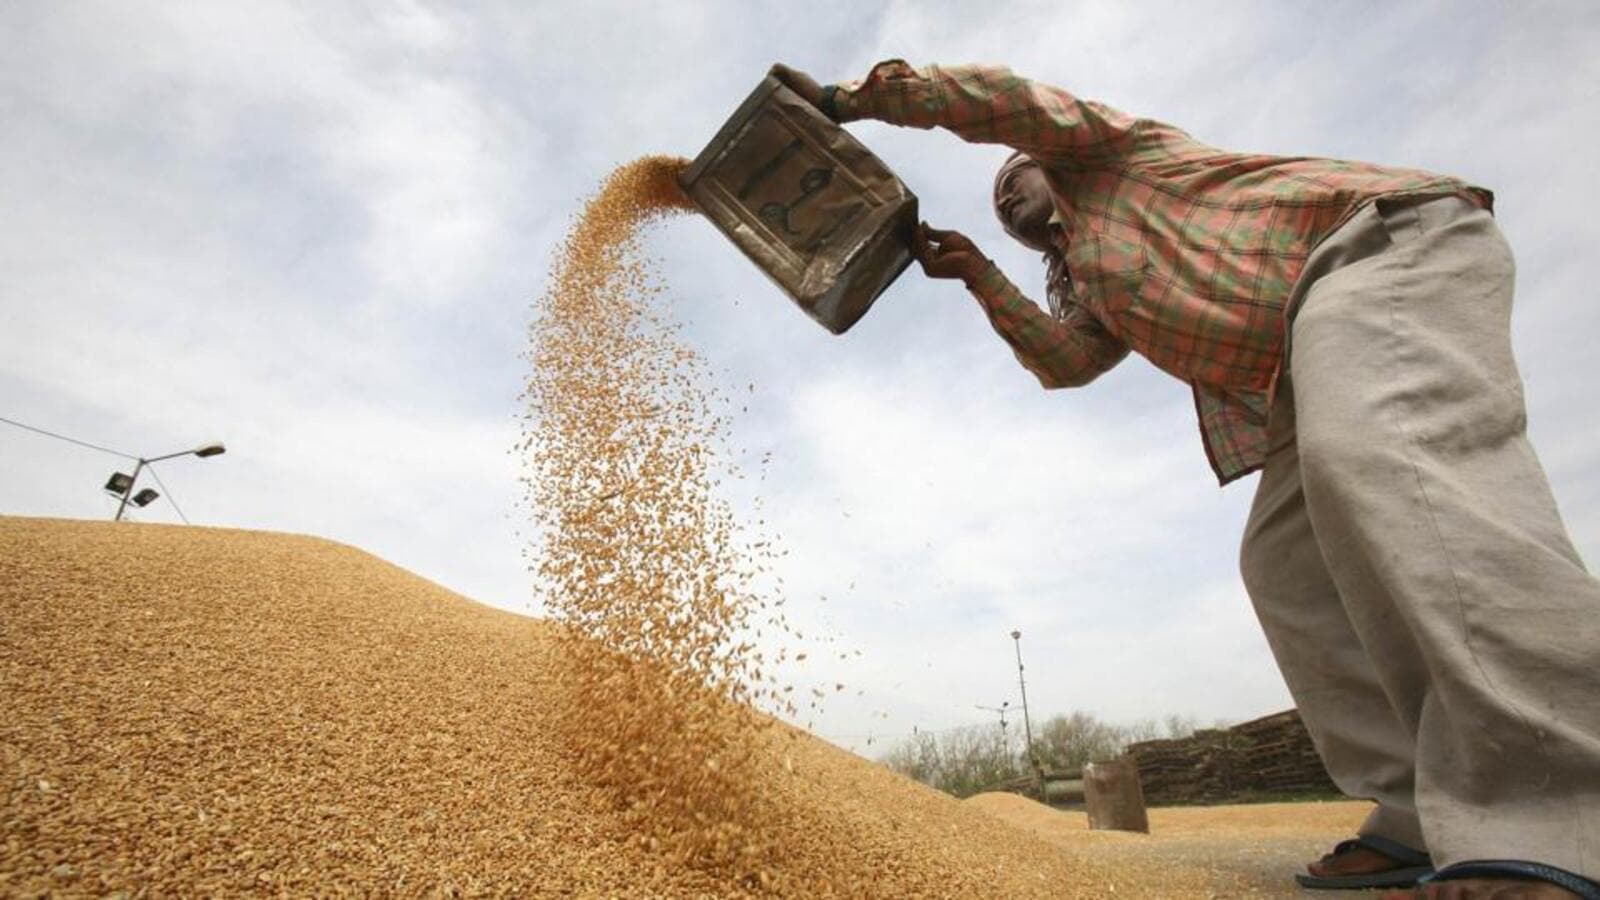 India mungkin mengizinkan ekspor gandum ke Indonesia dengan imbalan minyak sawit |  Berita Terbaru India